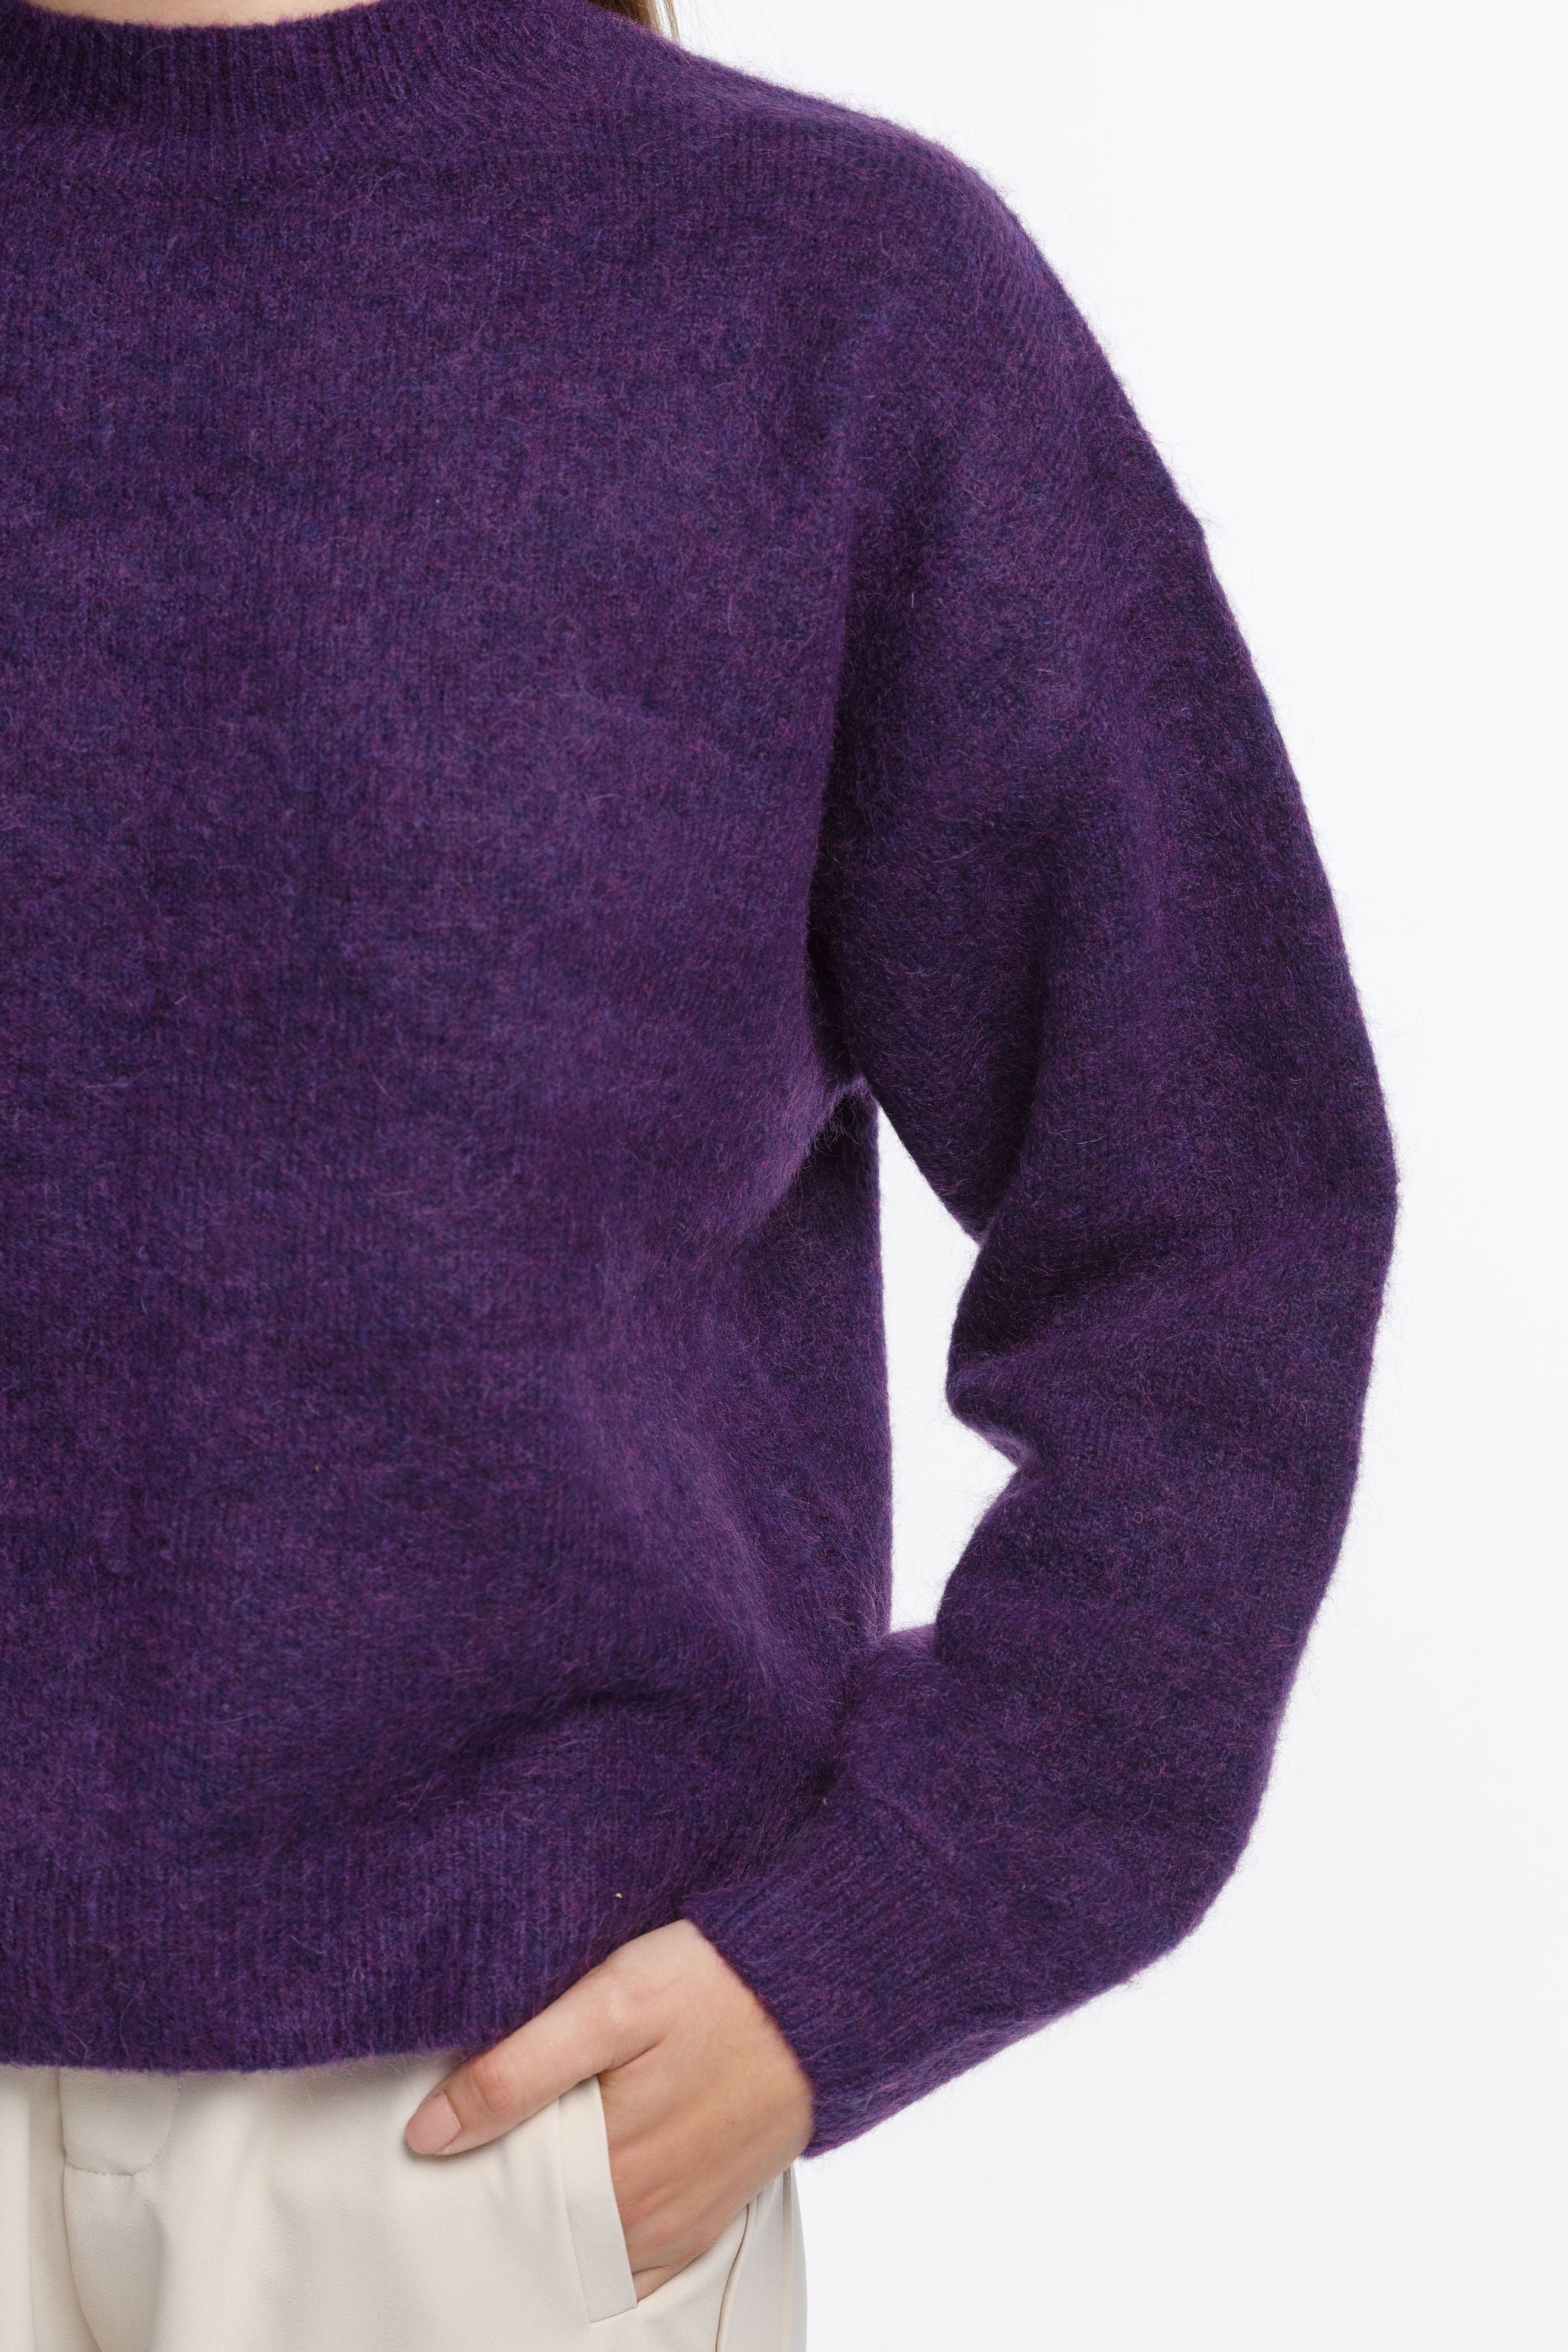 Gio Knit - Sale - Purple